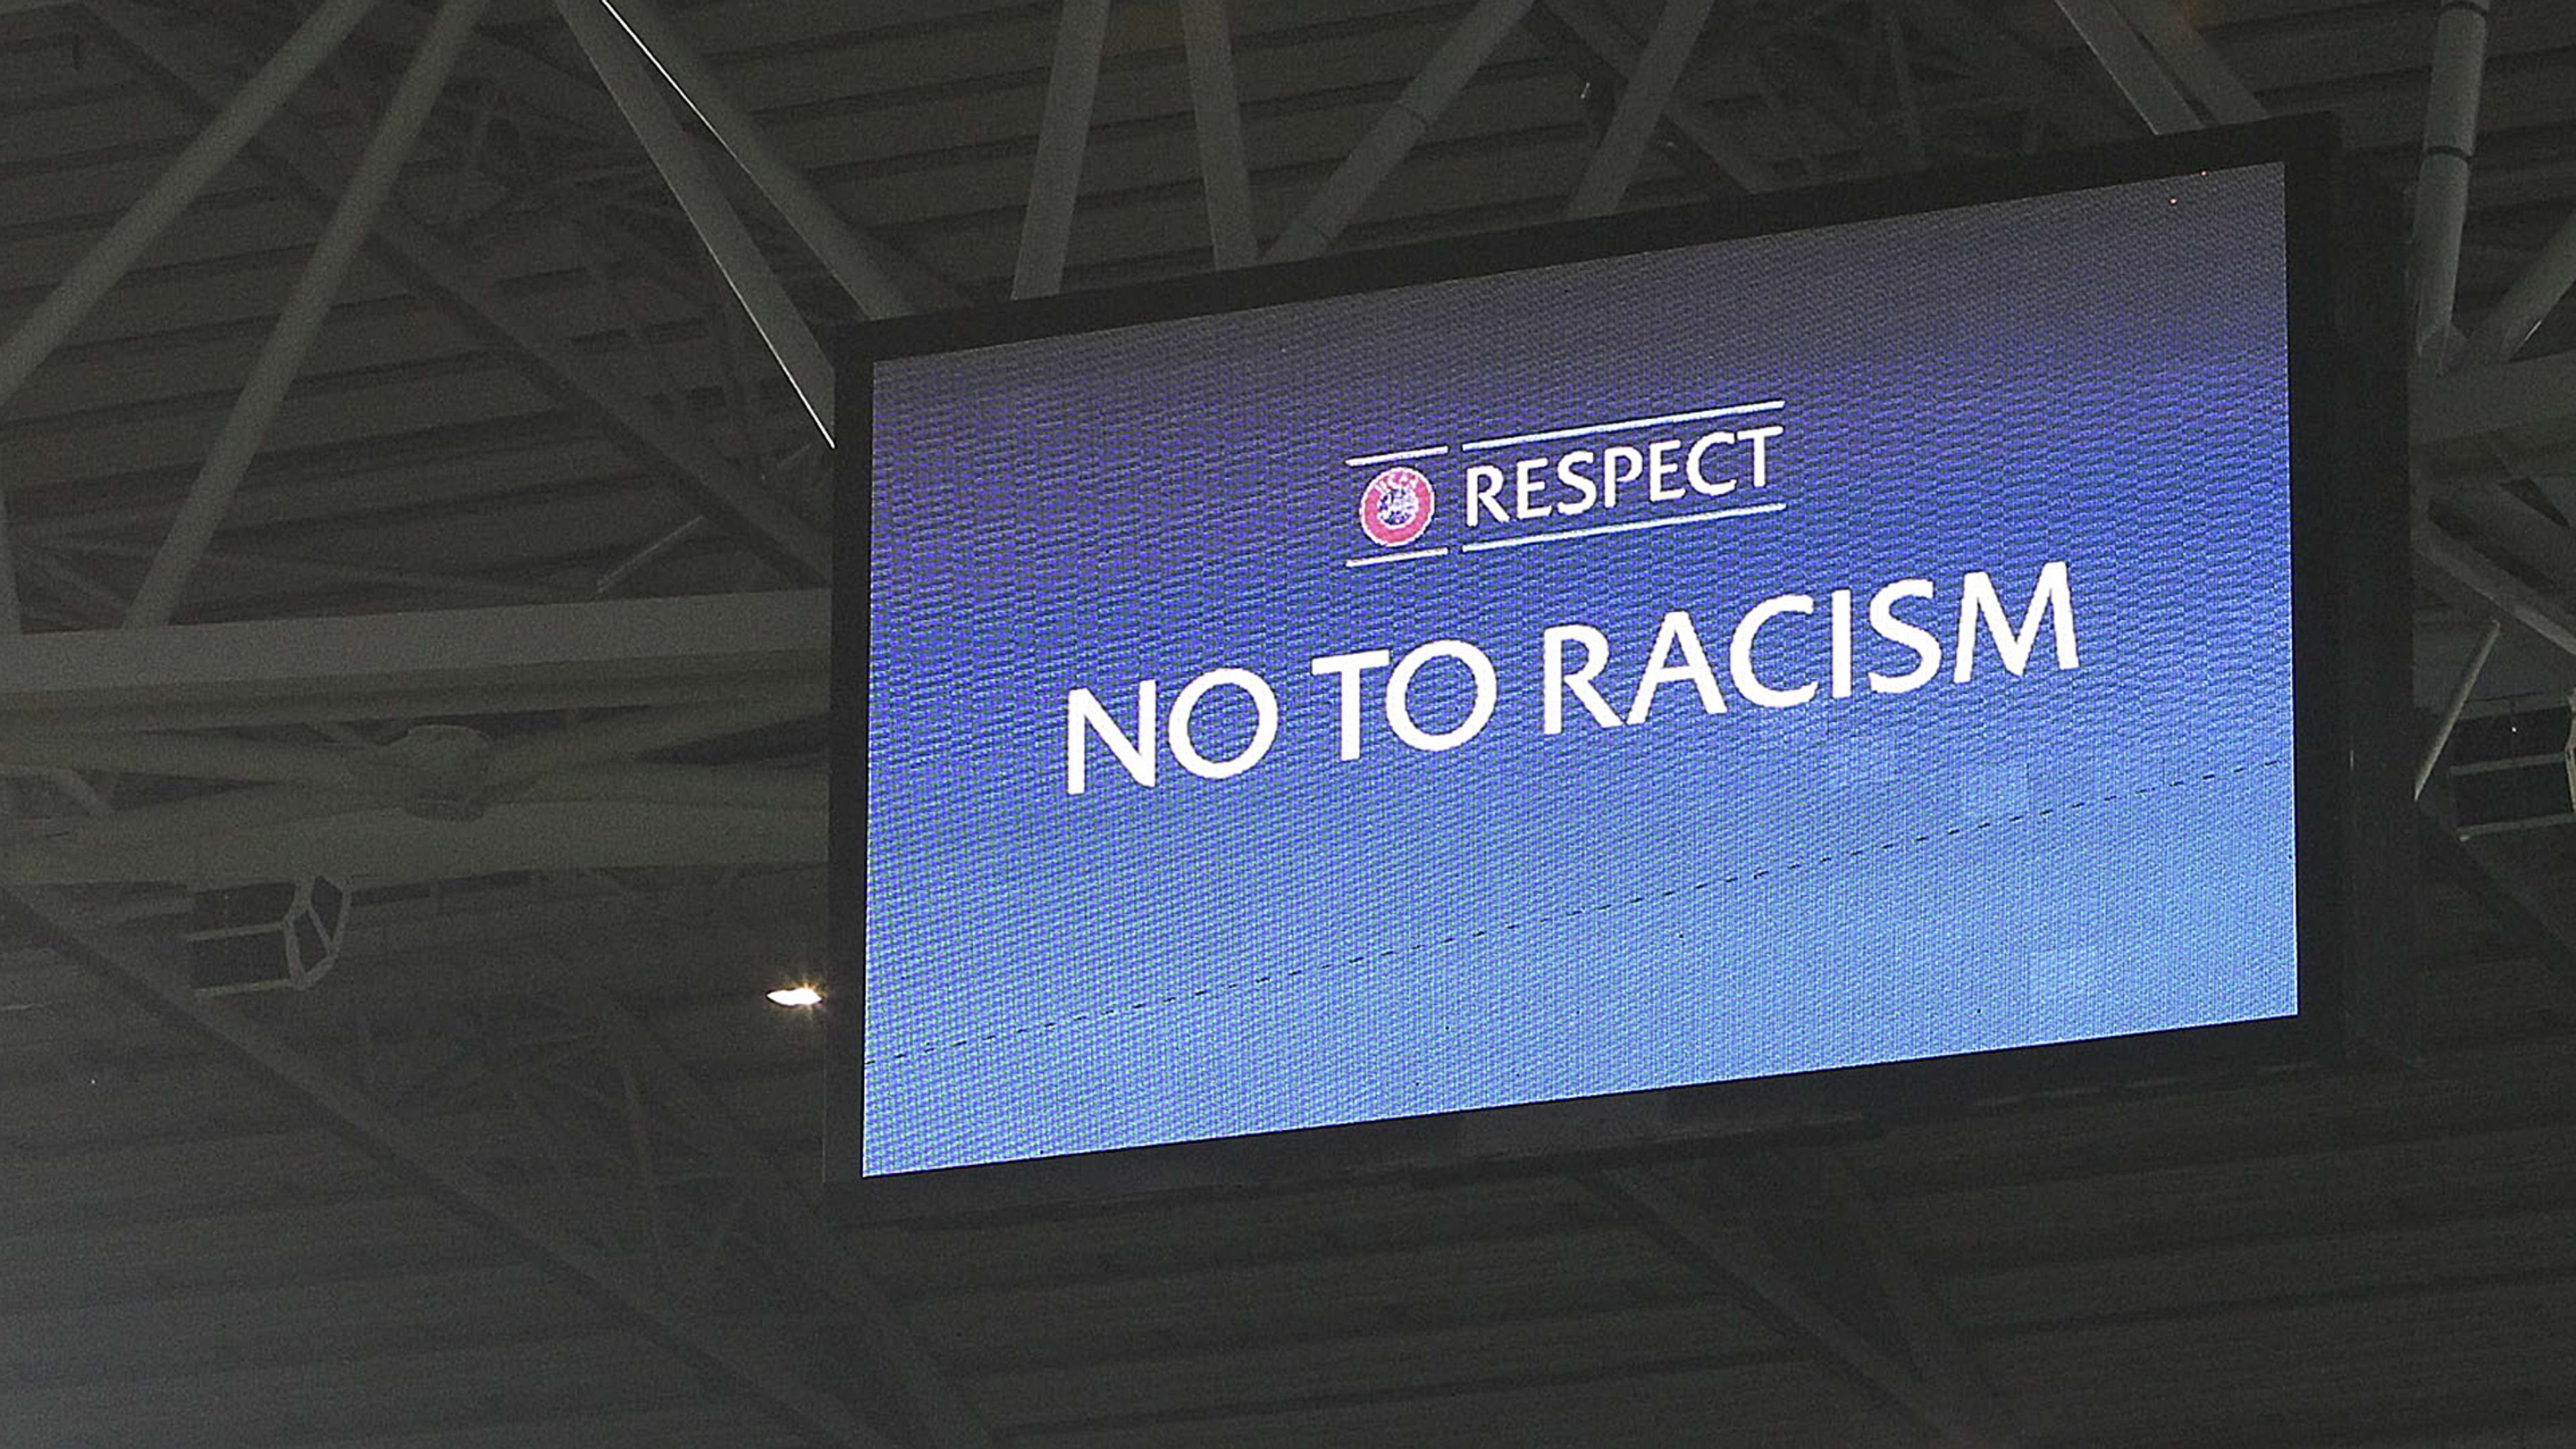 NO TO RACISM UEFA JUVENTUS TURIN 10212015